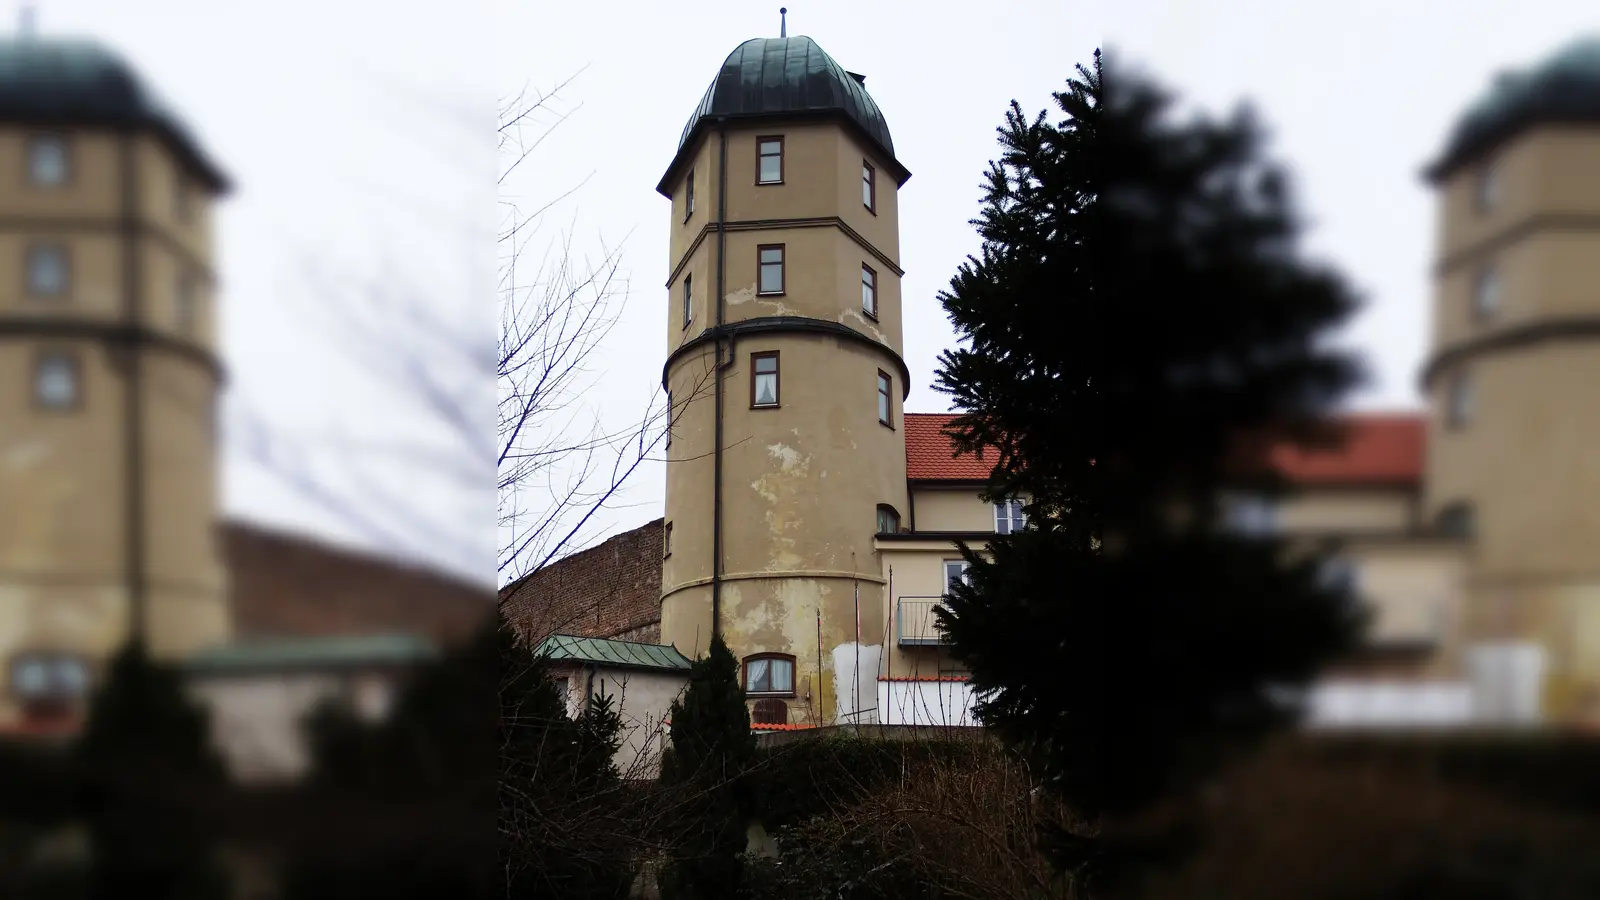 <b>Der alte Wasserturm</b> ist ein repräsentatives Denkmal Friedbergs und Zeuge früher Bau- und Technikgeschichte. Er war ursprünglich ein Wehrturm. 1606 wurde er erhöht und zum Wasserturm ausgebaut. (Foto: Ingo Aigner)